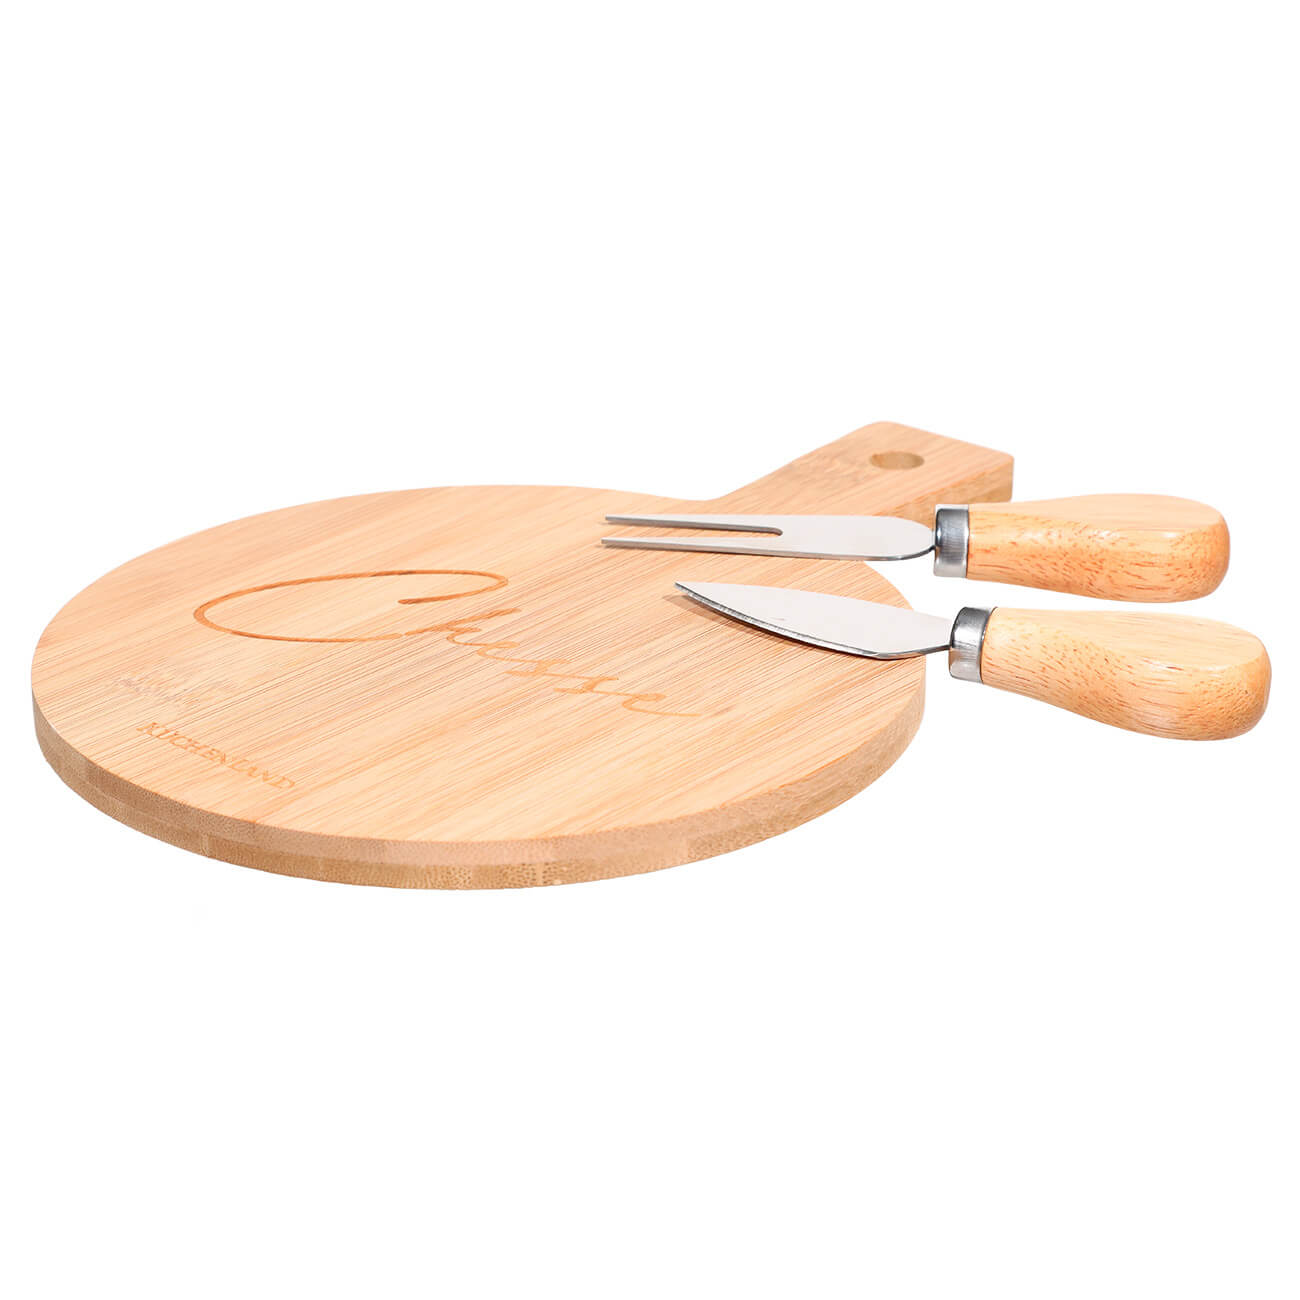 Набор для сыра, 3 пр, доска-блюдо с ручкой, бамбук/сталь, круглый, Cheese, Bamboo набор для кормления миска вилка ложка голубой